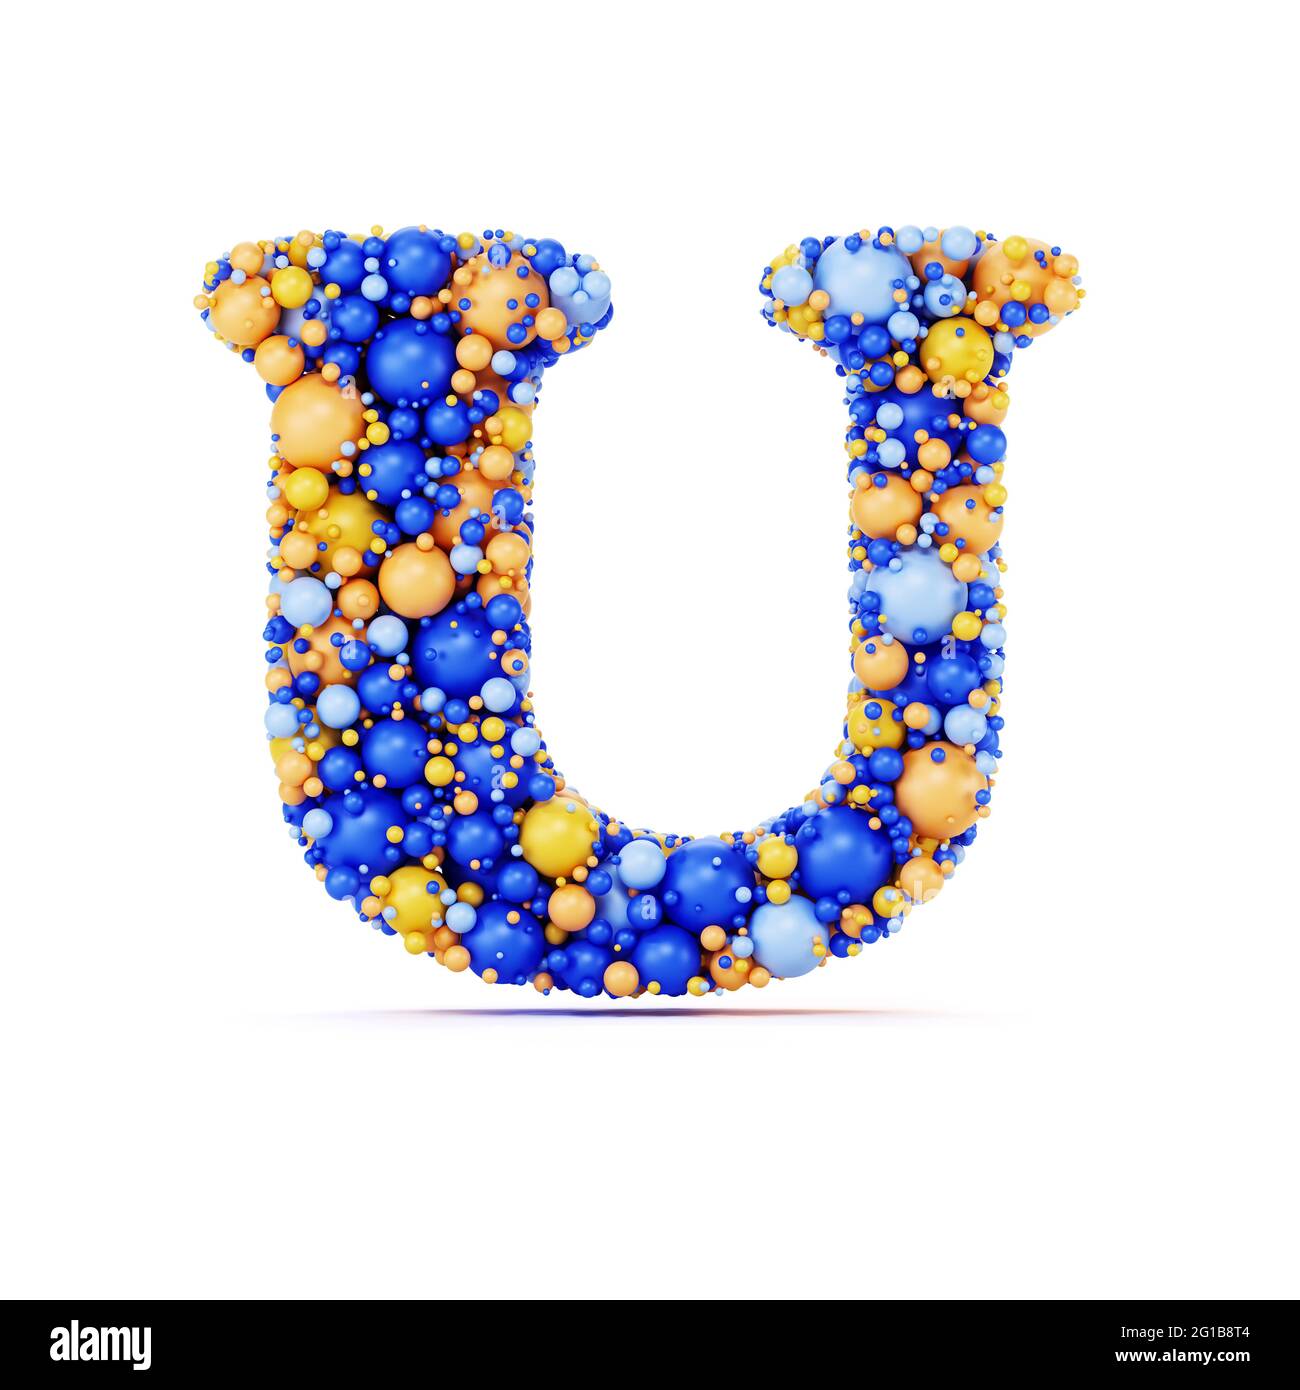 Lettre U avec boules brillantes colorées. Illustration de rendu 3d réaliste. Isolé sur un arrière-plan blanc avec une dominante d'ombre Banque D'Images